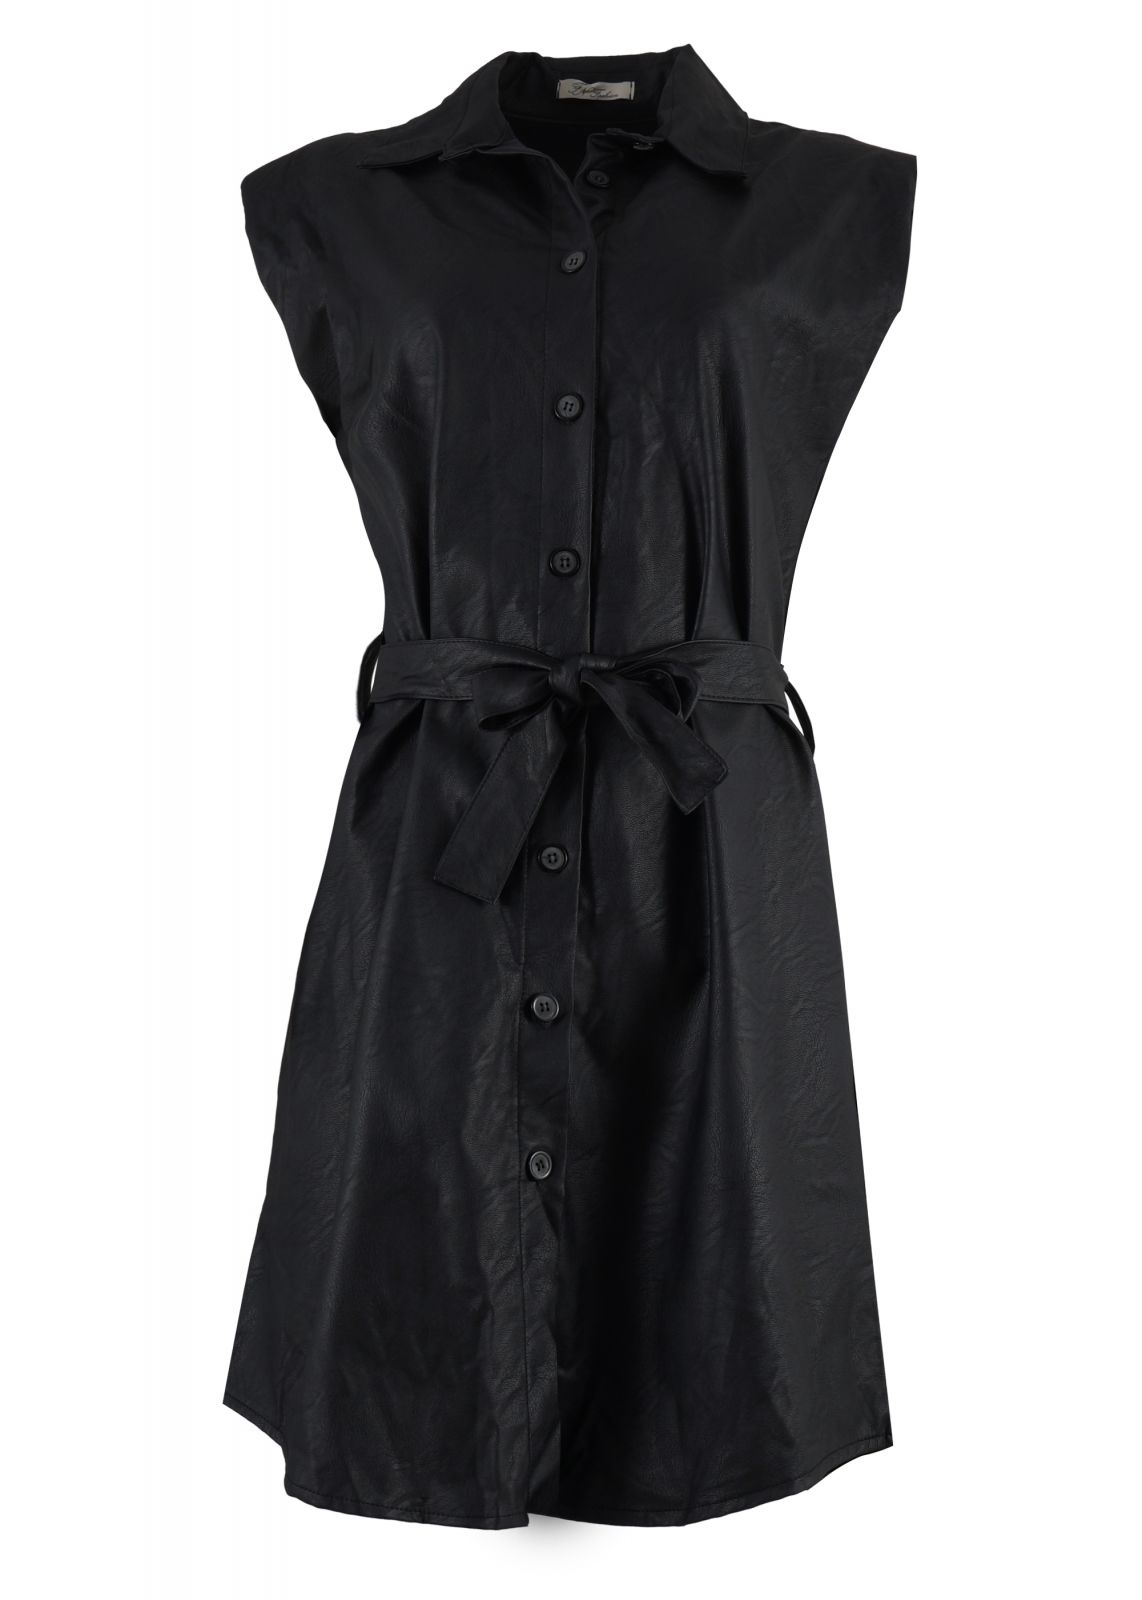 Γυναικείο φόρεμα δερματίνη με κουμπιά & ζώνη. Leather collection.